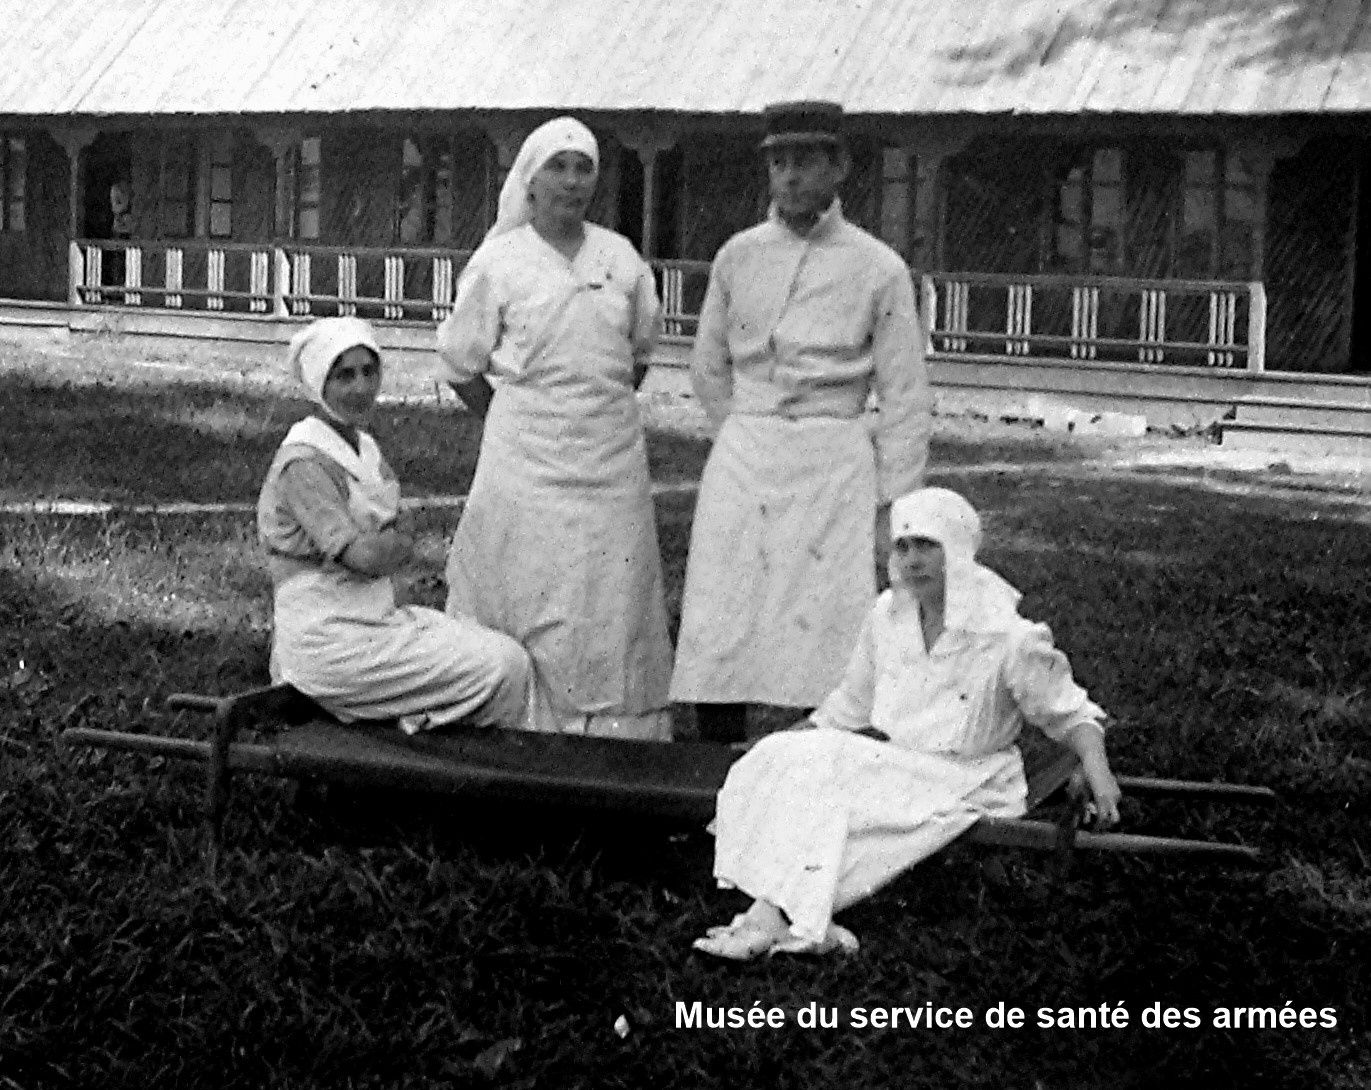 Equipe du docteur Le Lorier à l'hôpital militaire roumain de Cotofenesti, Roumanie (ca. 1917) - Musée du service de santé des armées (détail)